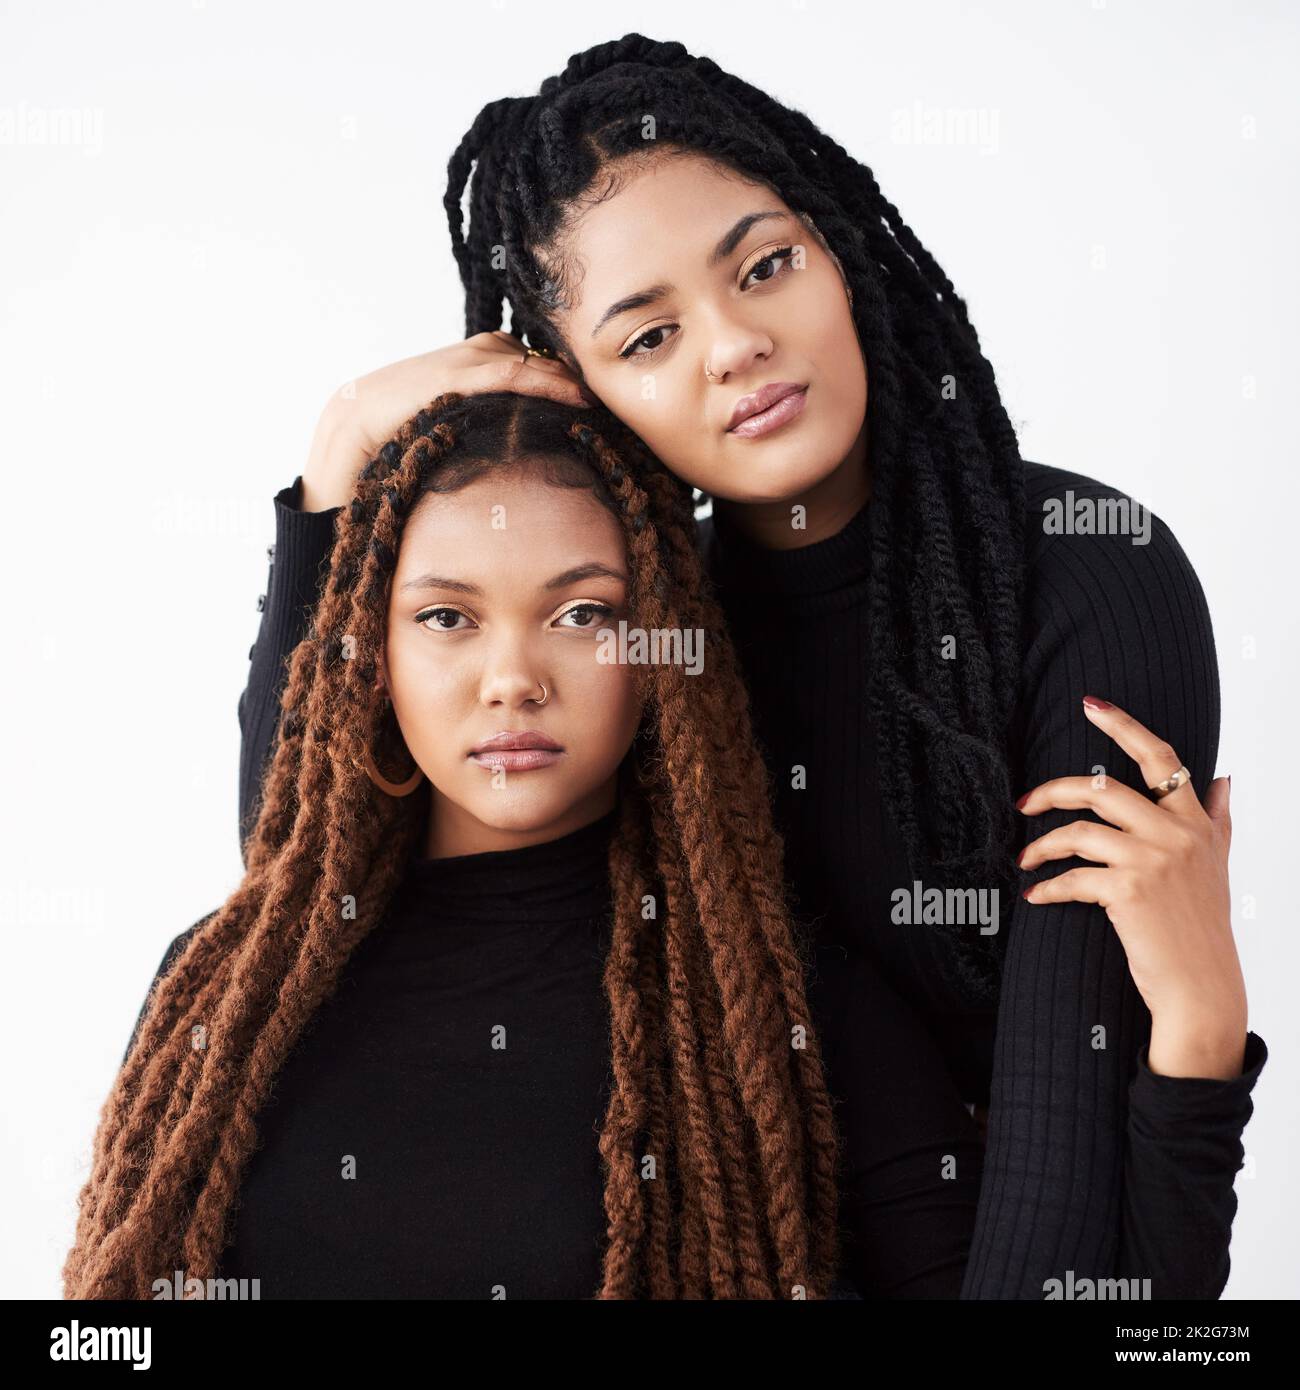 Sich mit ihrer Mode heftig zu fühlen. Studioaufnahme von zwei schönen jungen Frauen, die vor einem grauen Hintergrund posieren. Stockfoto